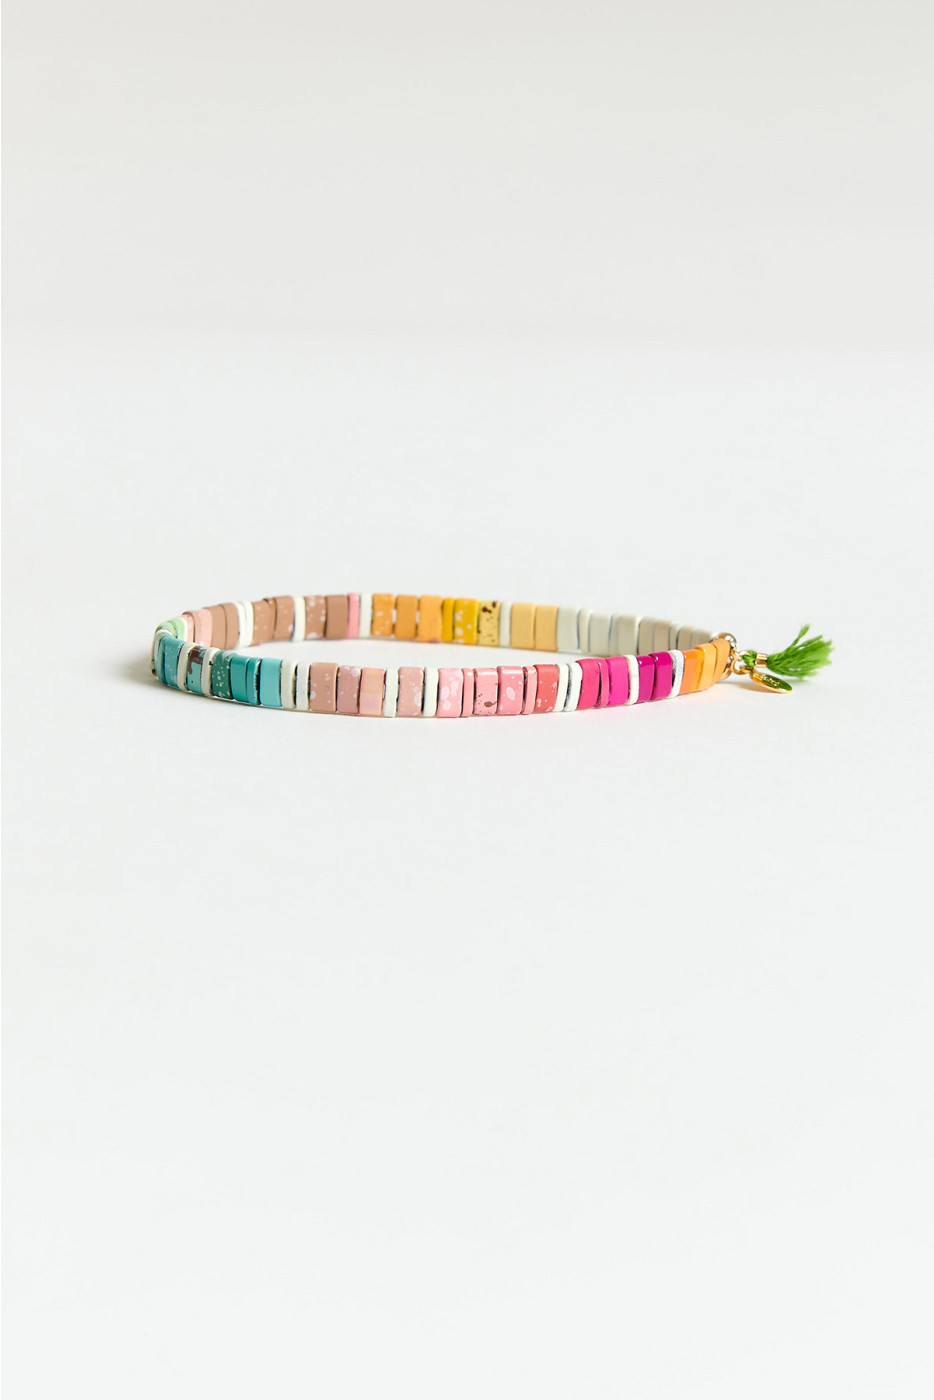 TILU Shashi® pink stretch bracelet